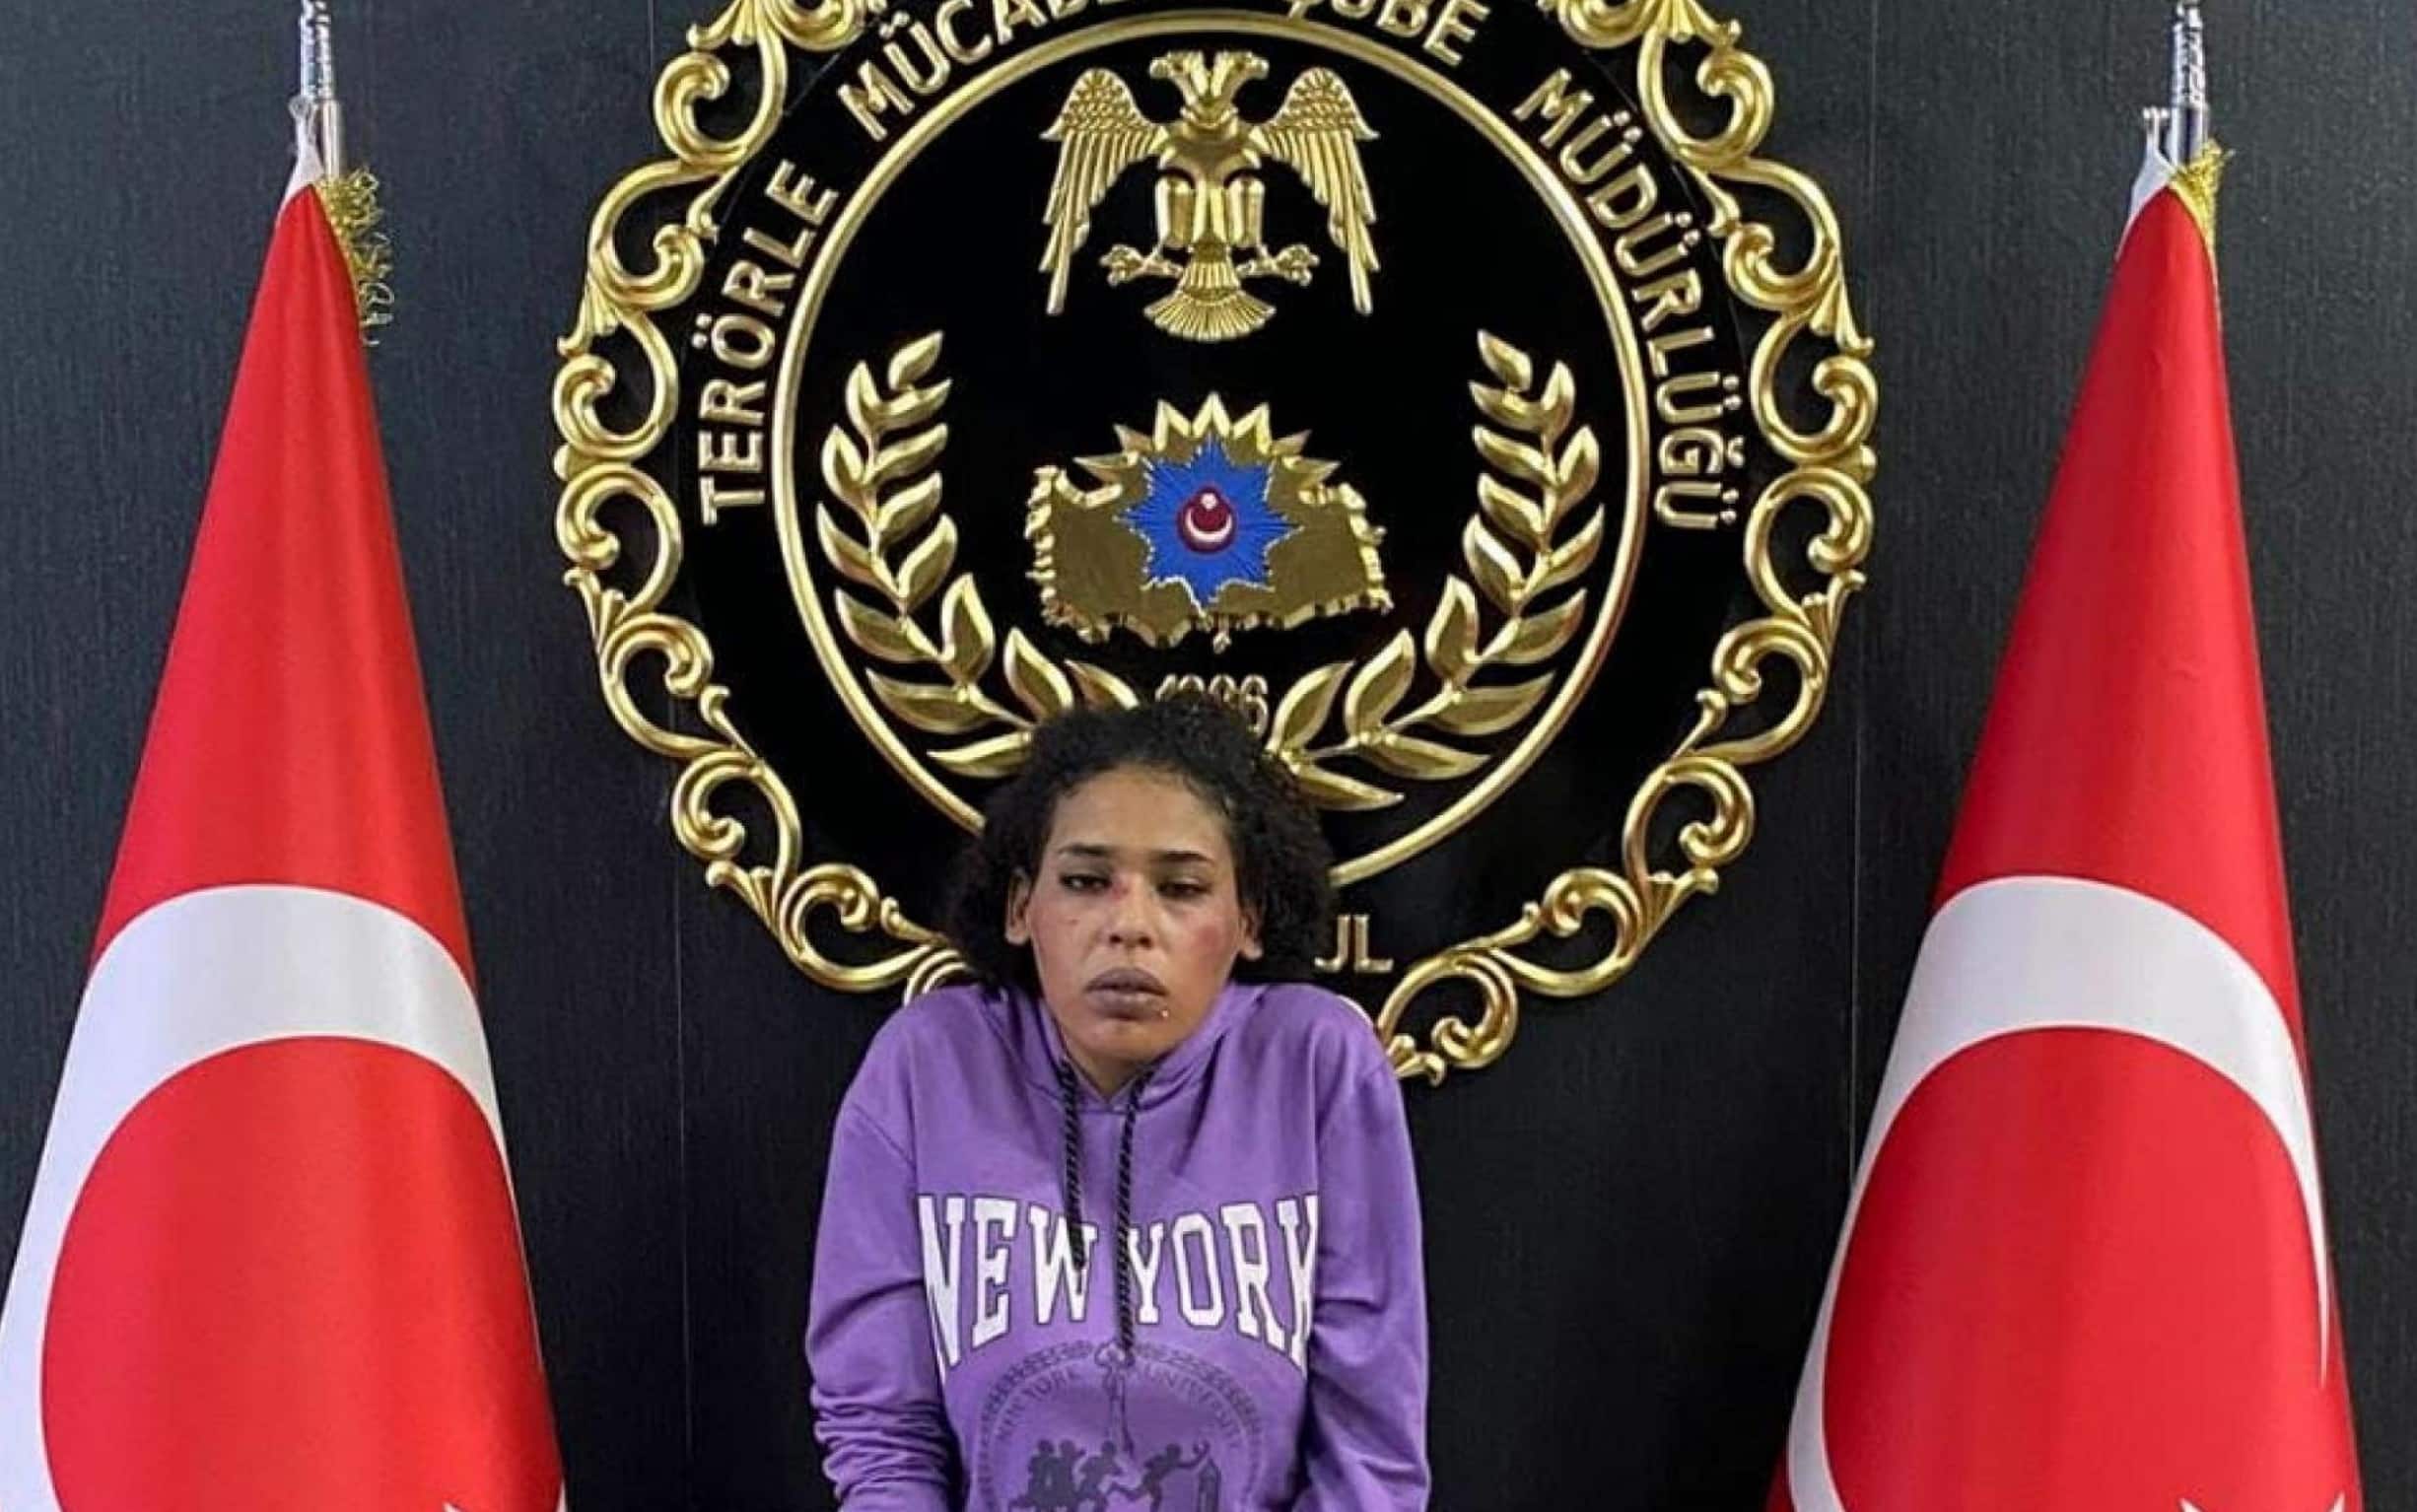 Ahlam Albashir, la donna di nazionalità siriana arrestata perché ritenuta responsabile dell'attentato che ha ucciso 6 persone ieri a Istanbul, ha confessato durante l'interrogatorio di essere stata addestrata dal partito curdo armato Pkk e dalle milizie curde siriane dello Ypg, 14 novembre 2022.
ANSA/ISTANBUL POLICE DEPARTMENT + PRESS OFFICE, HANDOUT PHOTO, NO SALES, EDITORIAL USE ONLY + NPK